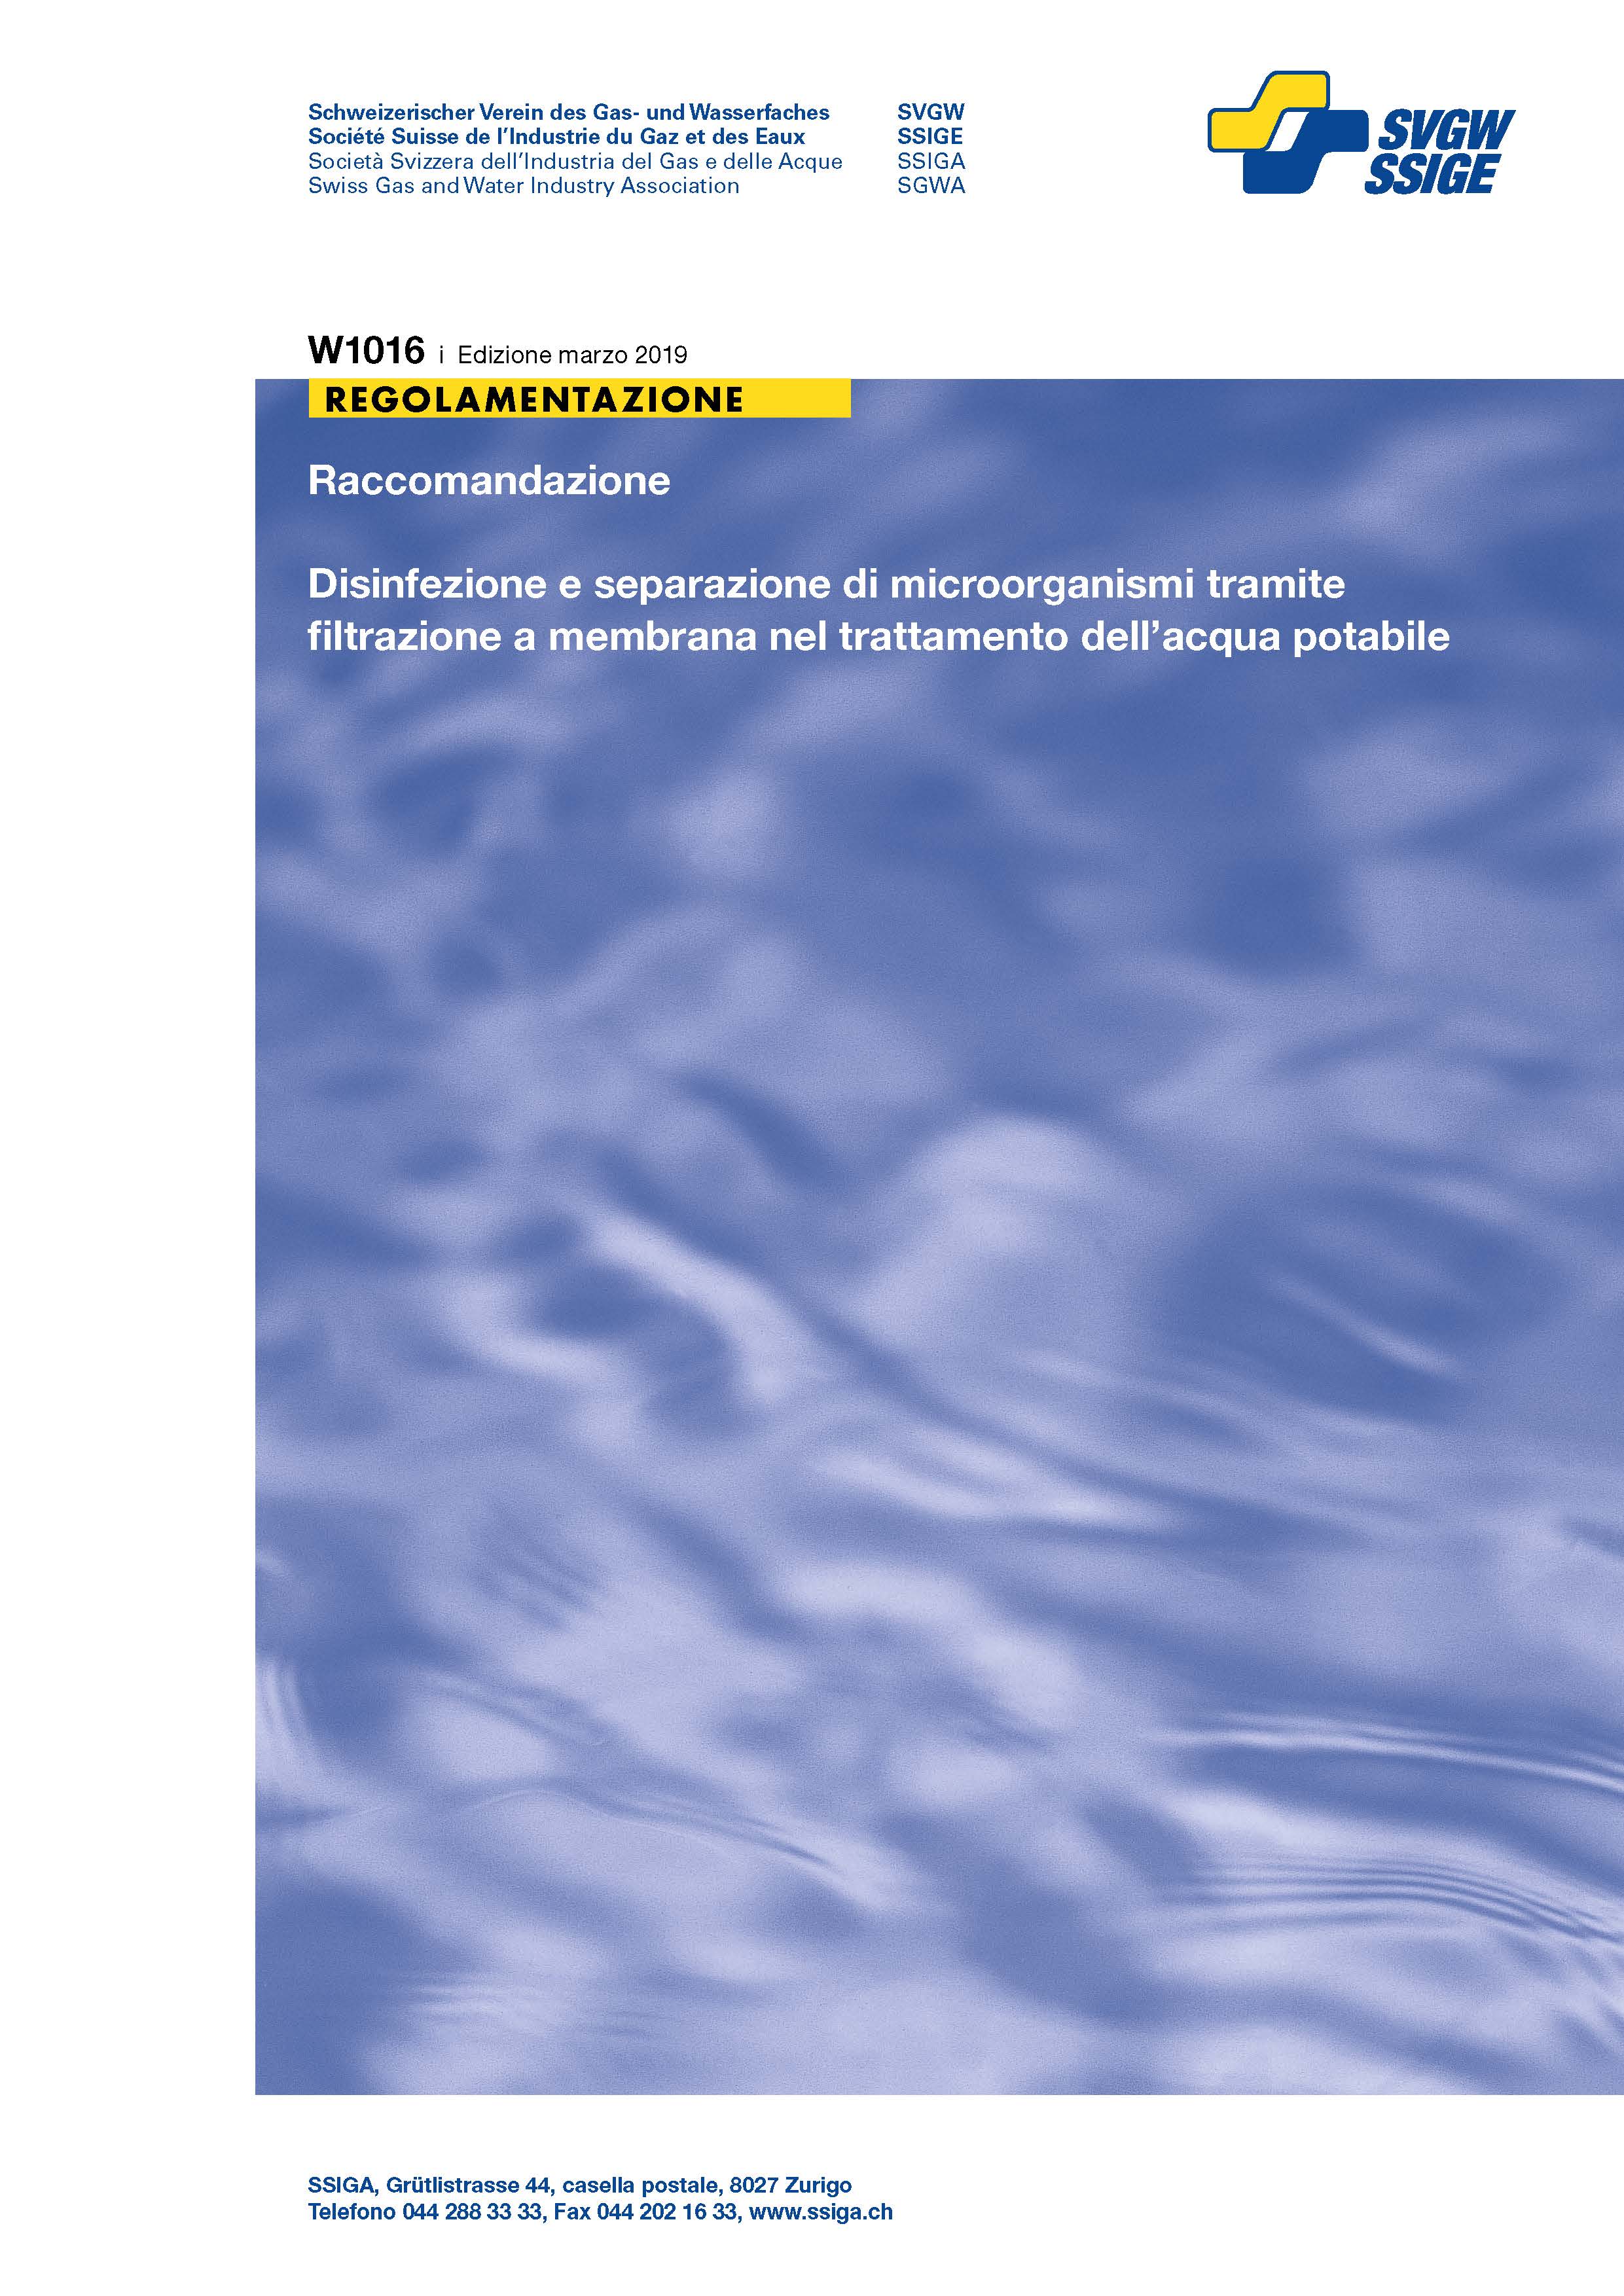 W1016 i Raccomandazione; Disinfezione e separazione di microorganismi tramite filtrazione a membrana nel trattamento dell'acqua potabile